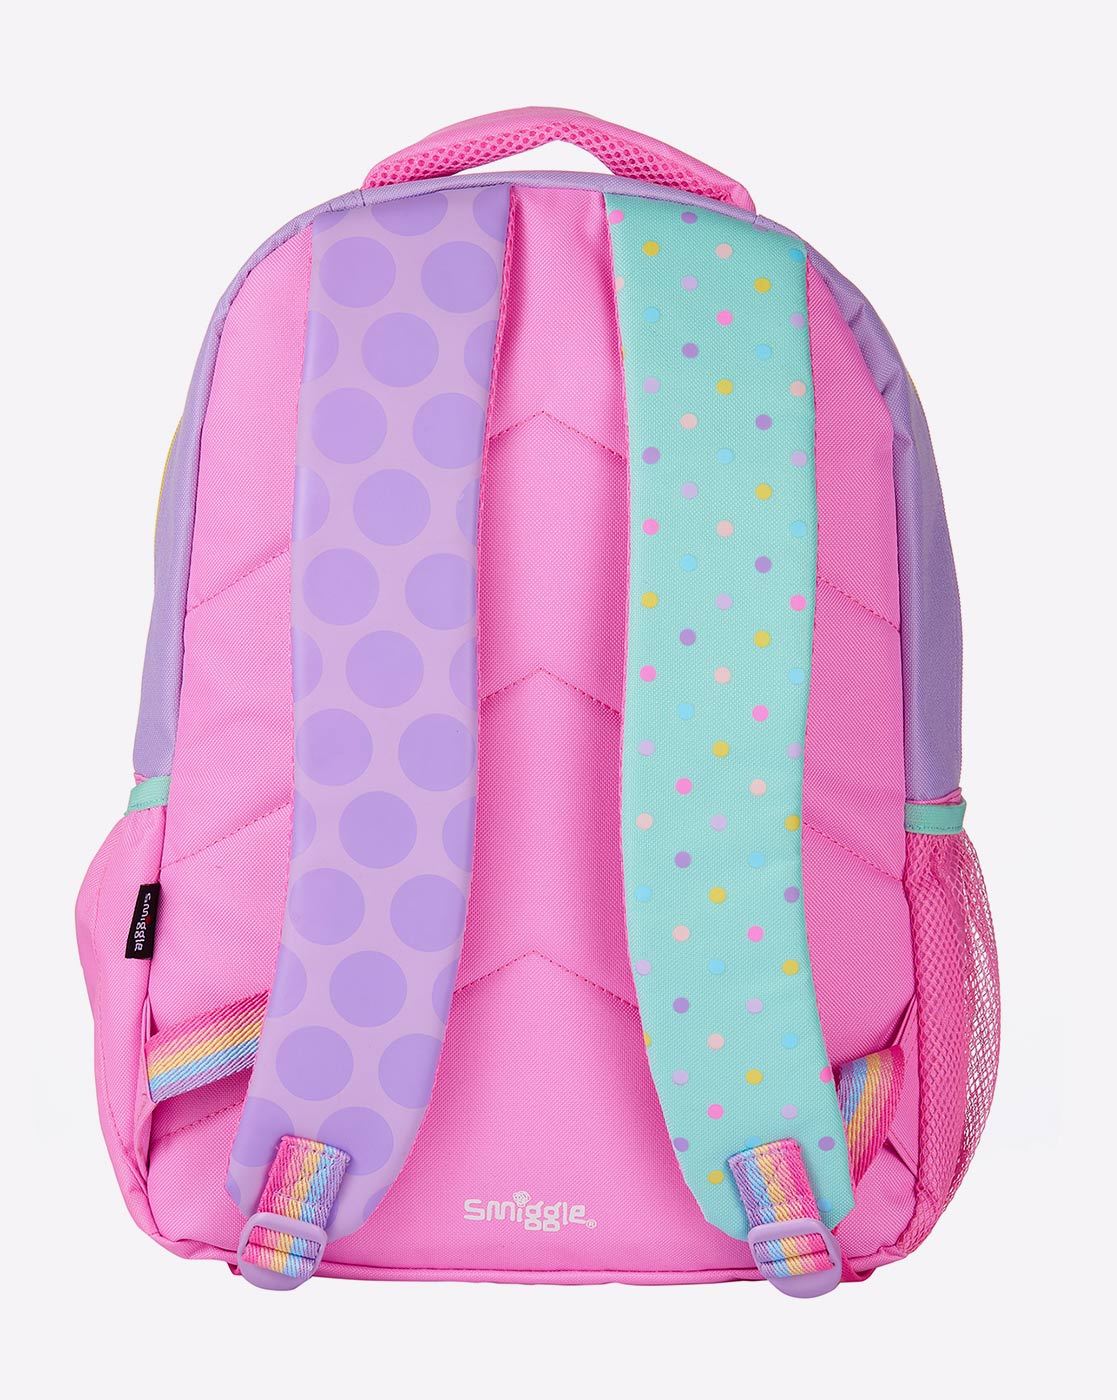 Smiggle Backpacks, Lunchbox Bags & Drink Bottles - Smiggle Mid Blue Backpack  - Smiggle Illusion Zebra Wild Print Backpack - Shine Bright… | Instagram